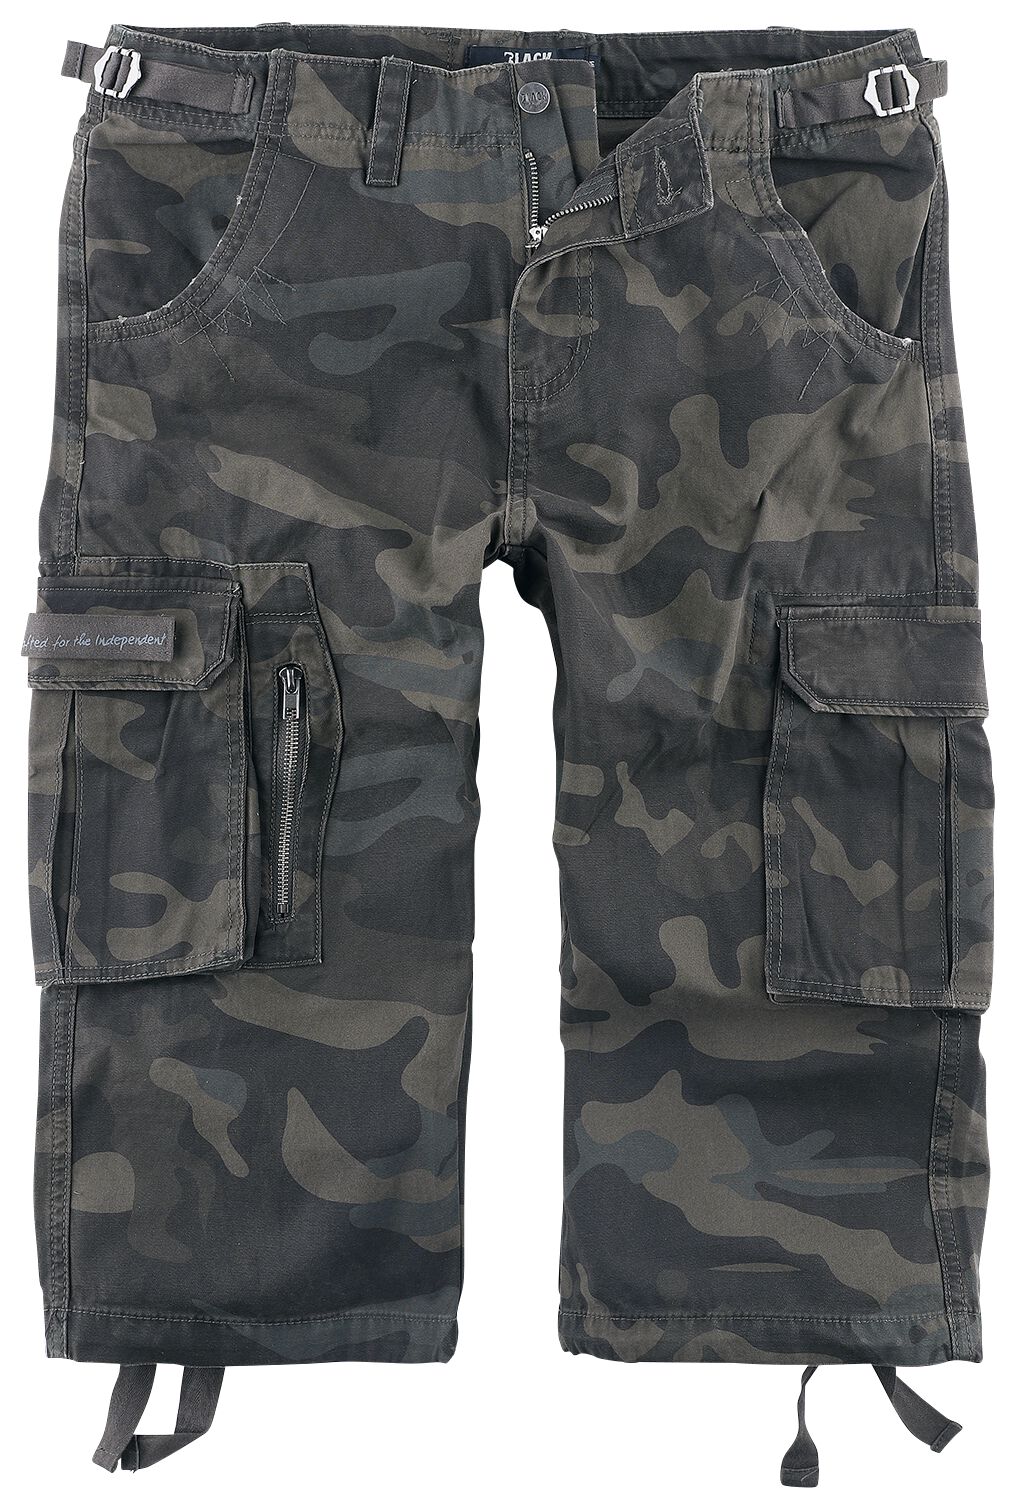 Black Premium by EMP - Camouflage/Flecktarn Short - 3/4 Army Vintage Shorts - S bis 7XL - für Männer - Größe 4XL - darkcamo